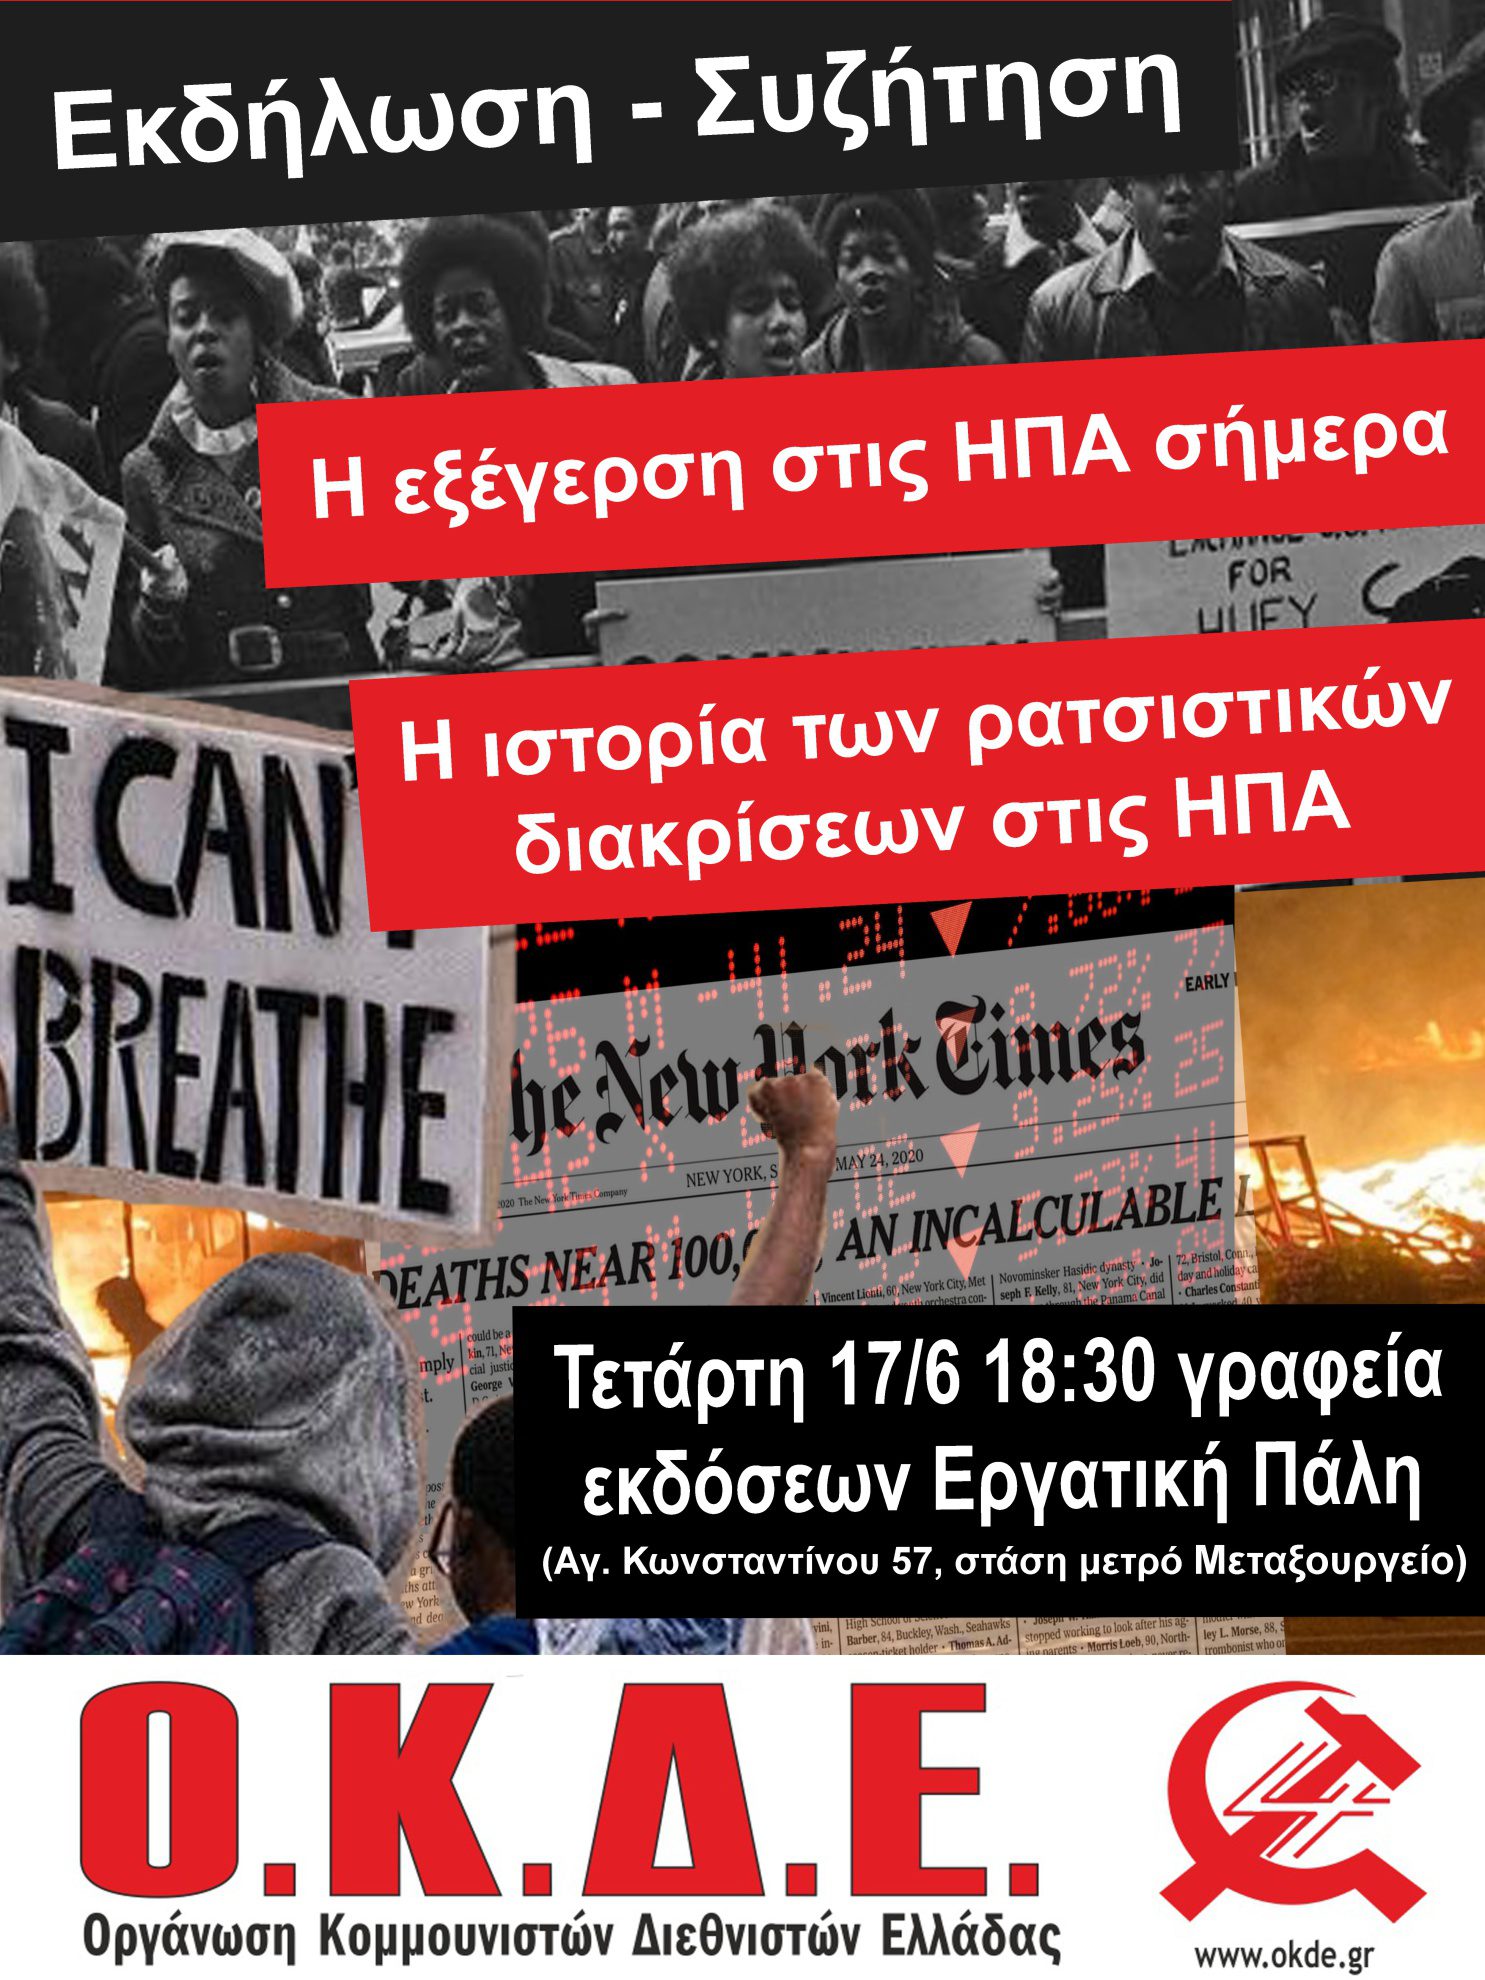 Εκδήλωση – Συζήτηση: Η εξέγερση στις ΗΠΑ και η ιστορία των ρατσιστικών διακρίσεων. Αθήνα, Τετάρτη 17/6